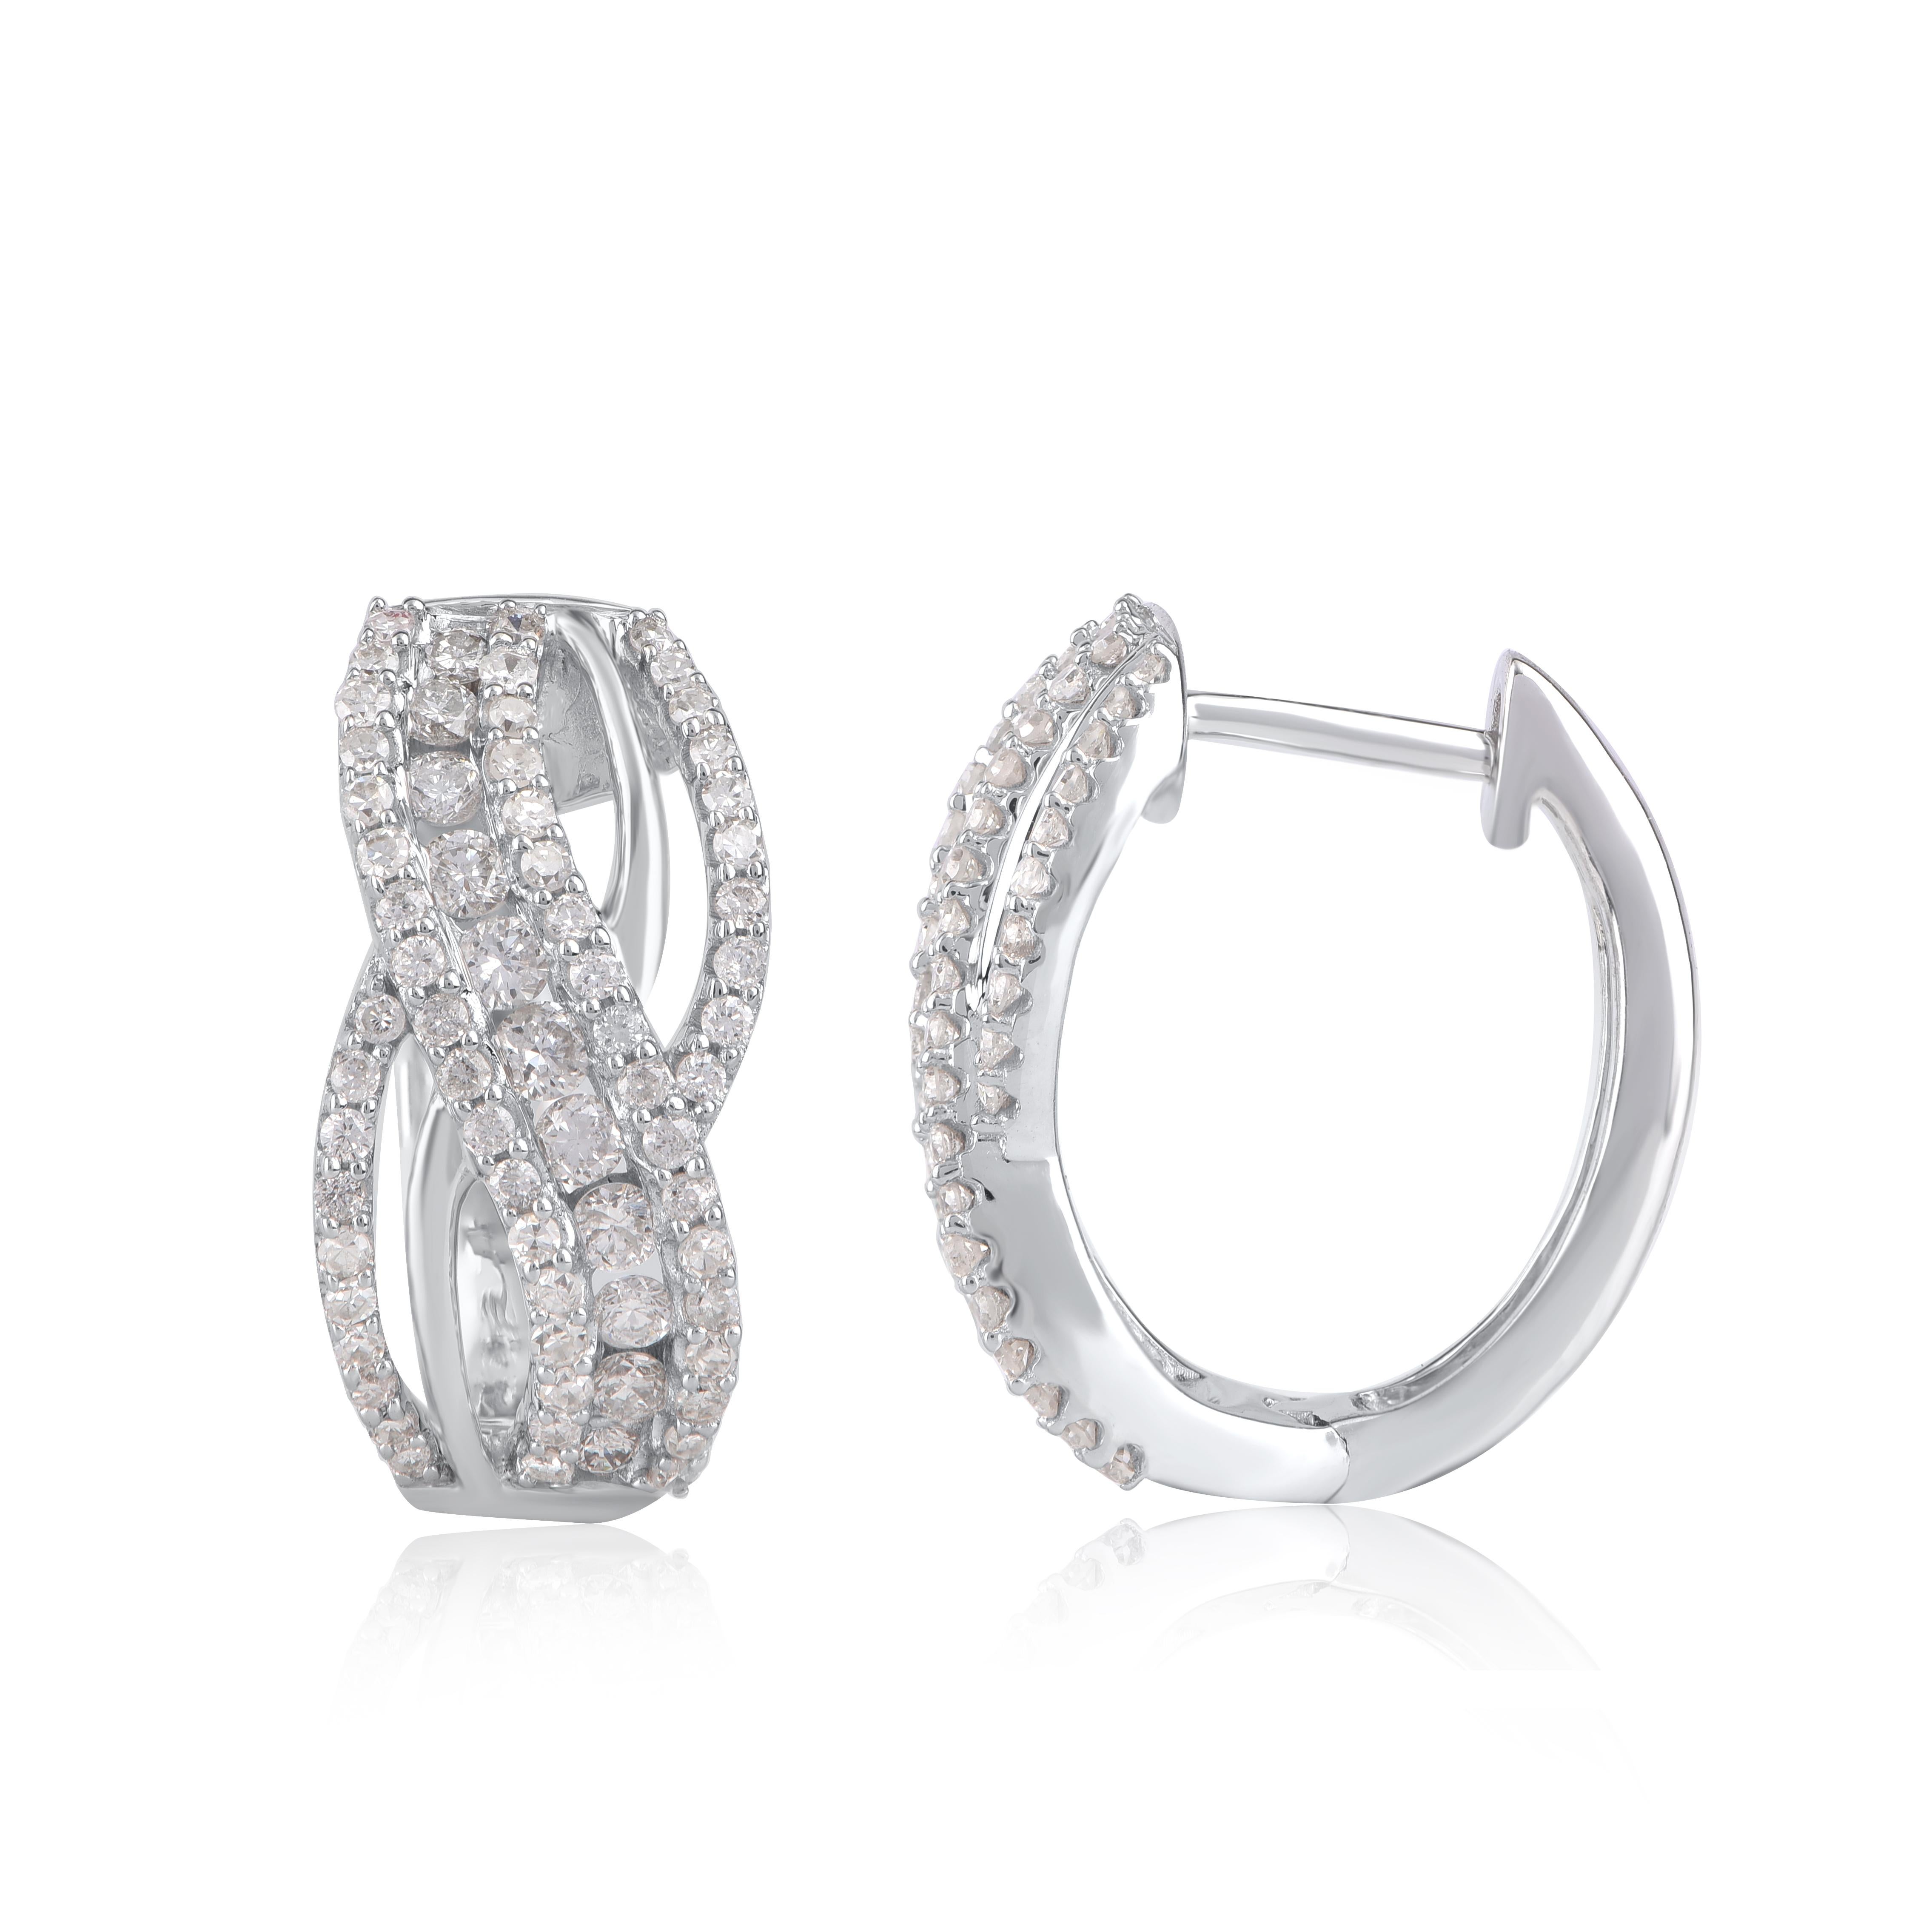 Bringen Sie Charme in Ihren Look mit diesen Diamant-Ohrringen. Dieser Ohrring ist wunderschön gestaltet und mit 134 Diamanten im Einzel- und Brillantschliff in Zacken- und Kanalfassung besetzt. Wir verwenden nur natürliche, 100% konfliktfreie